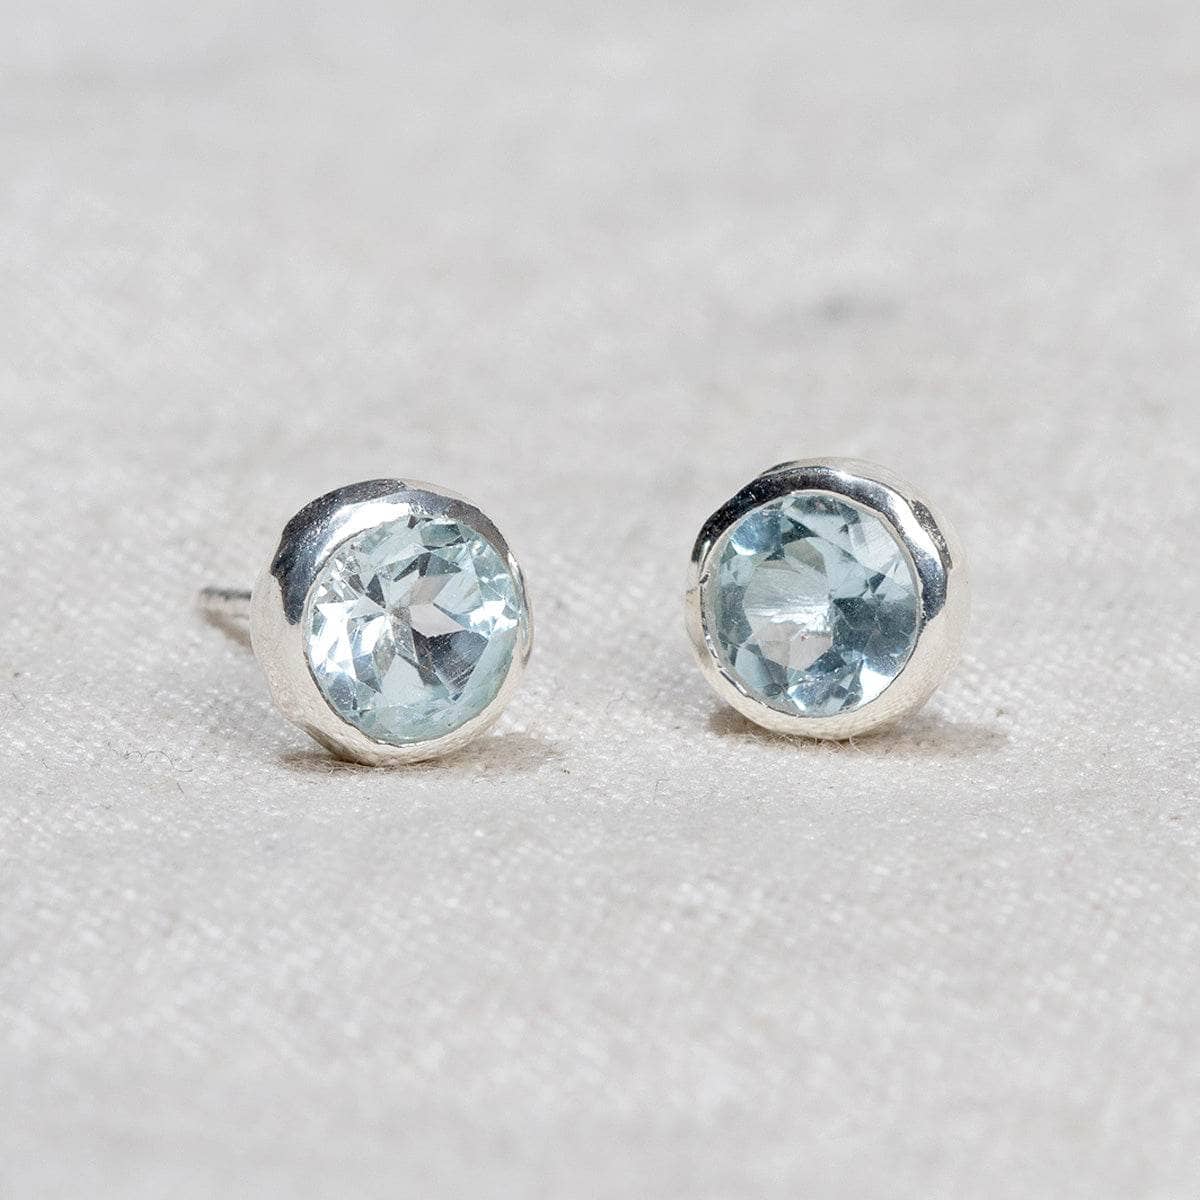 Blue topaz silver stud earrings